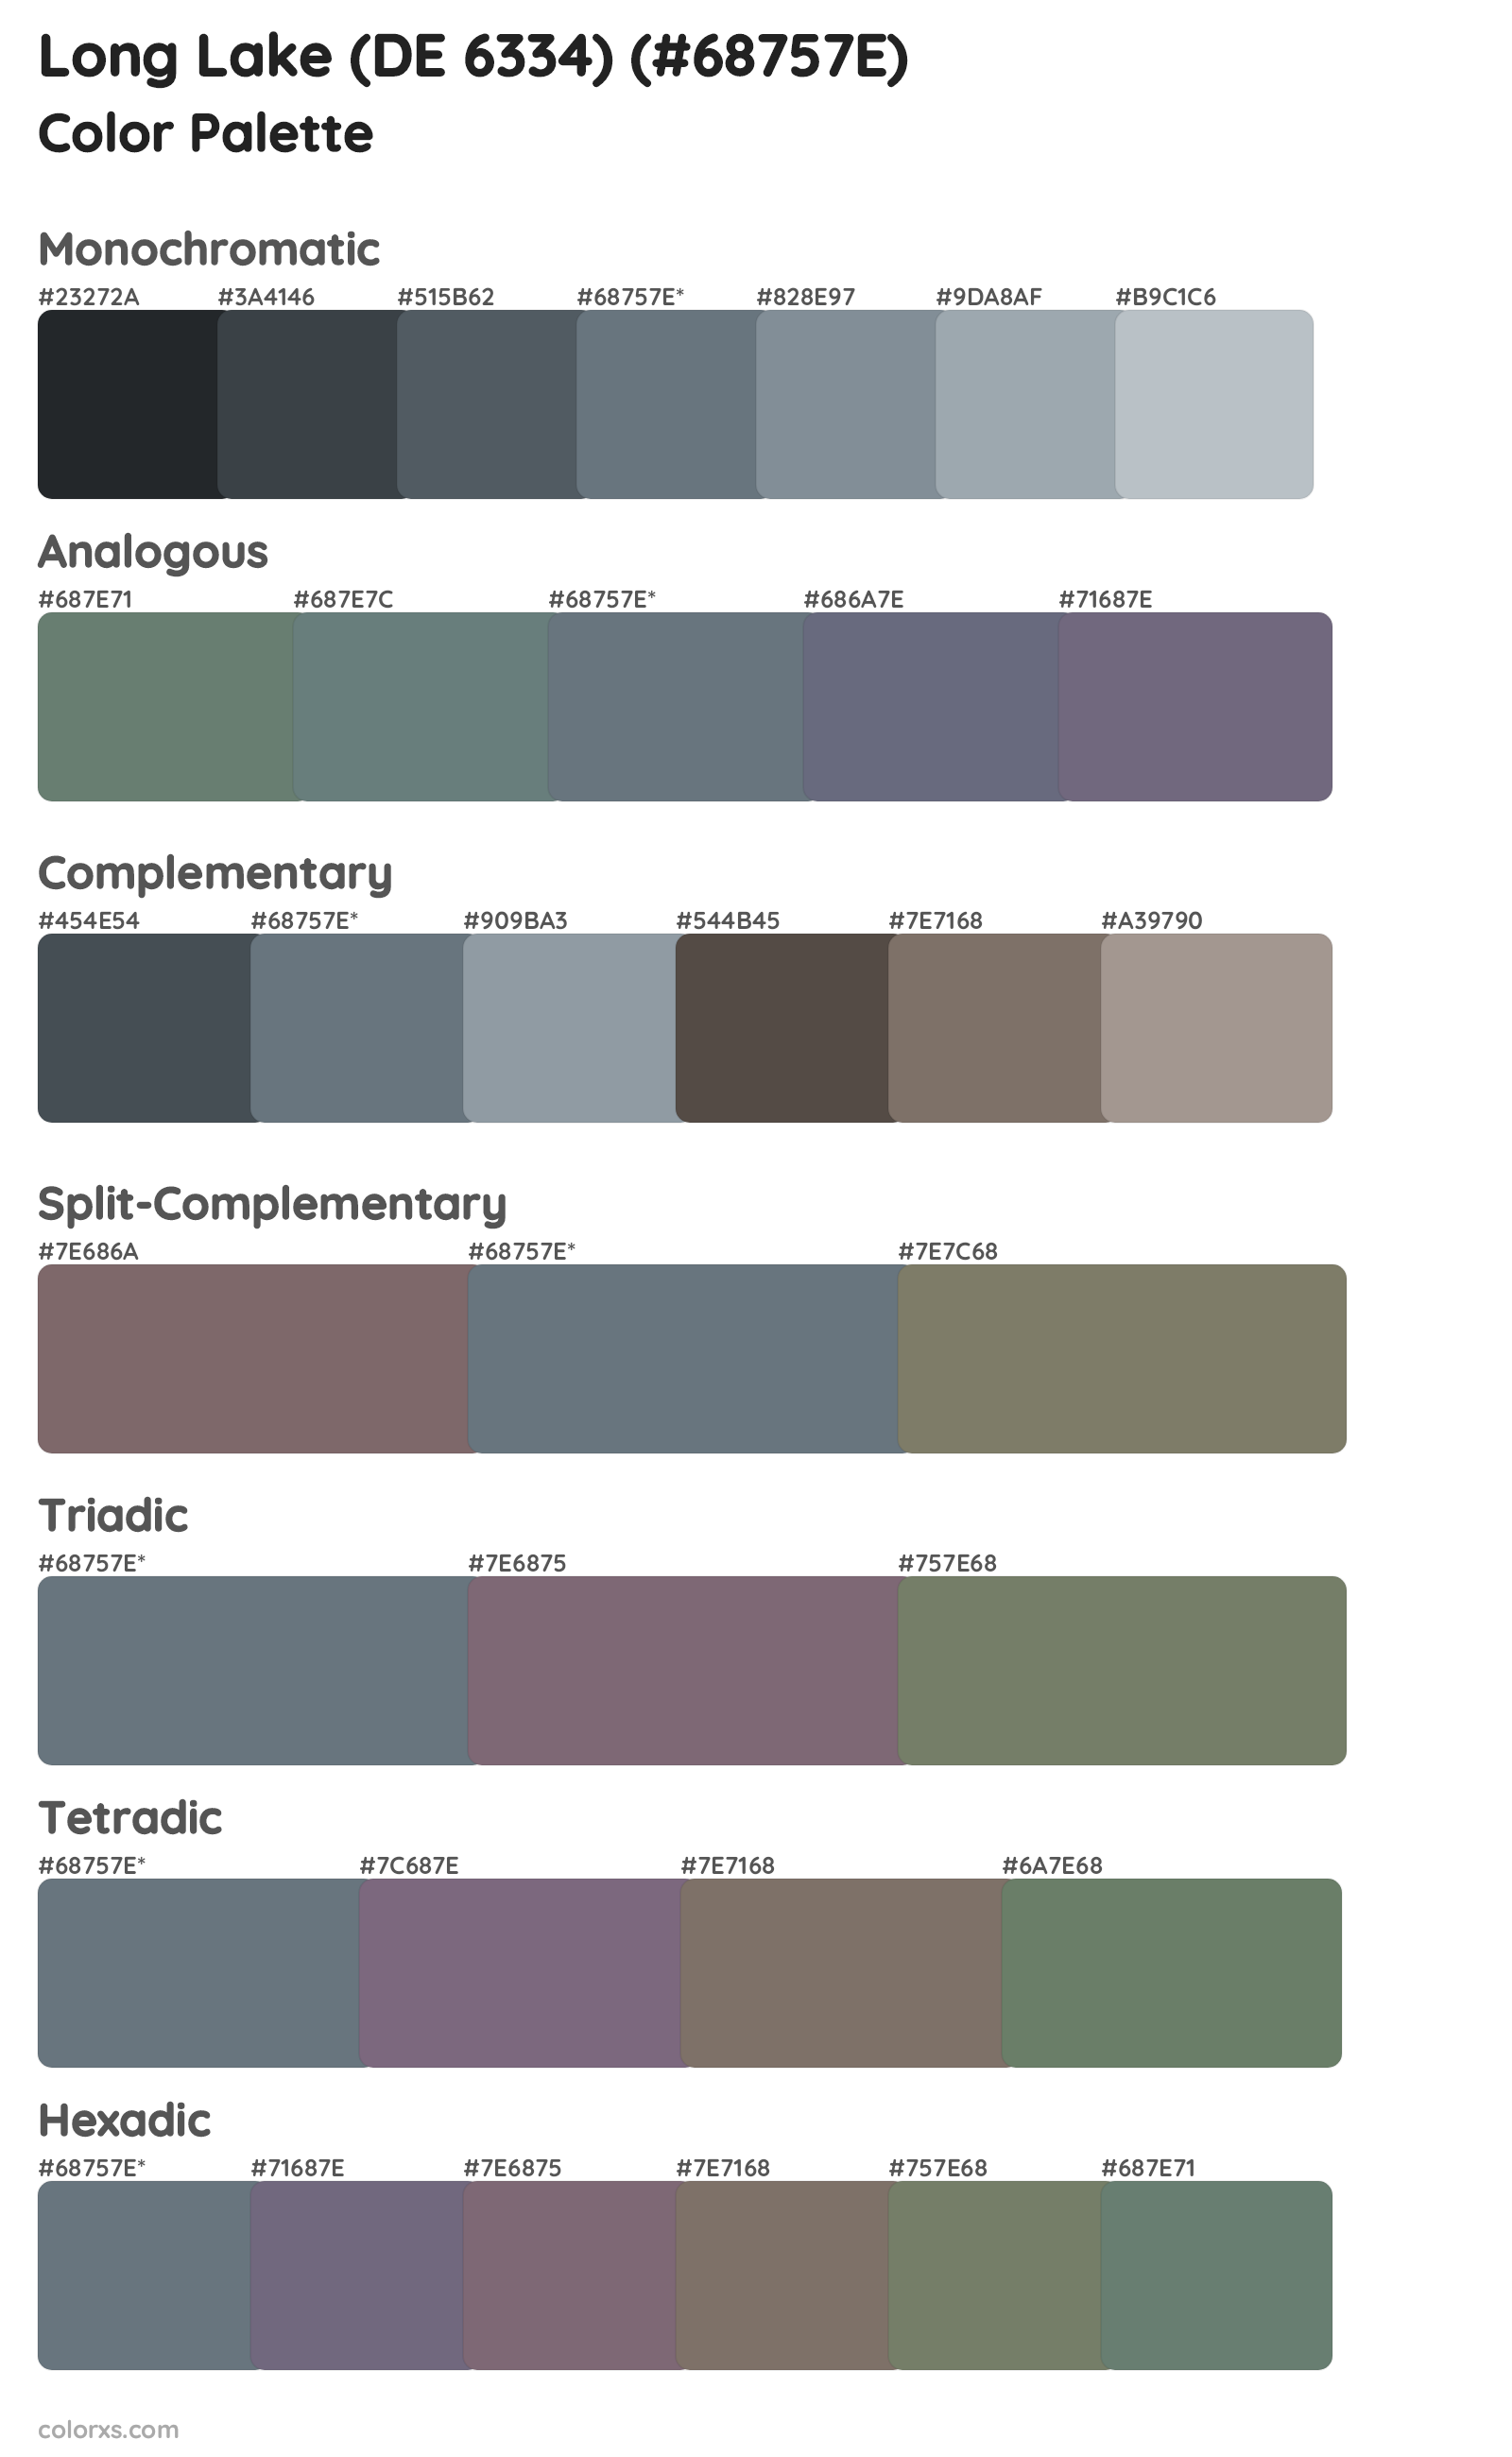 Long Lake (DE 6334) Color Scheme Palettes